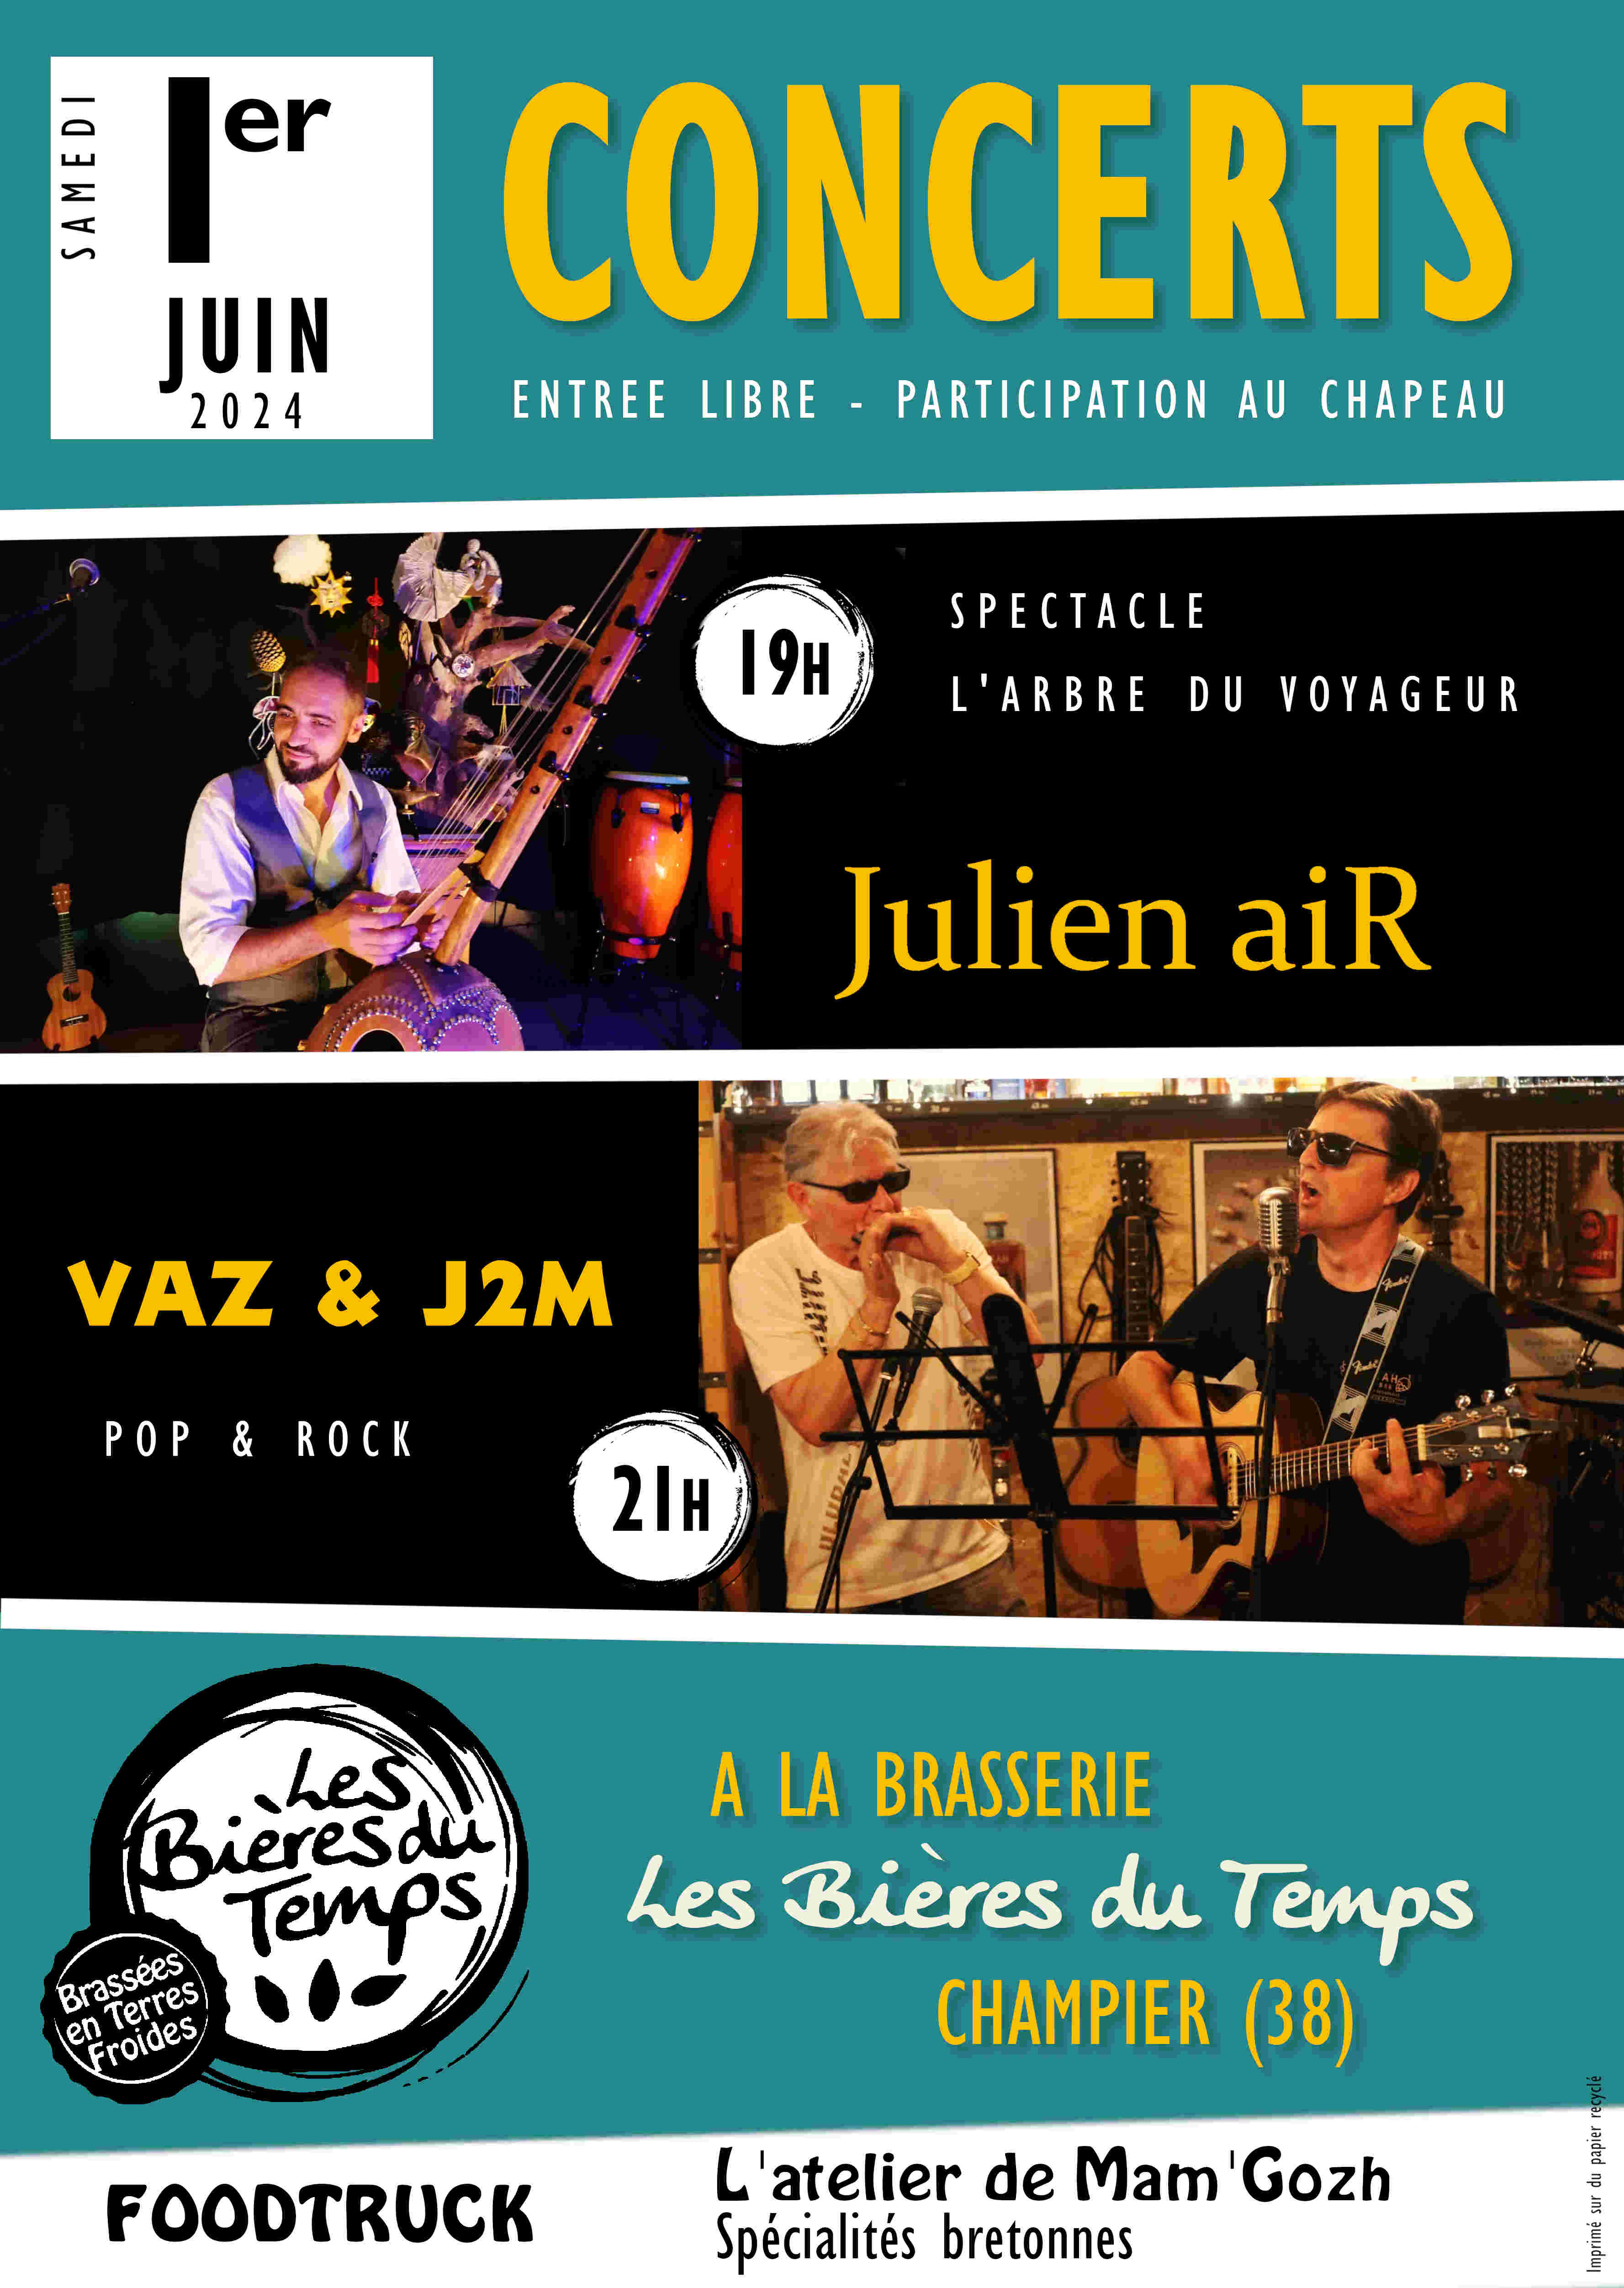 Concerts de Julien aiR & VAZ&J2M